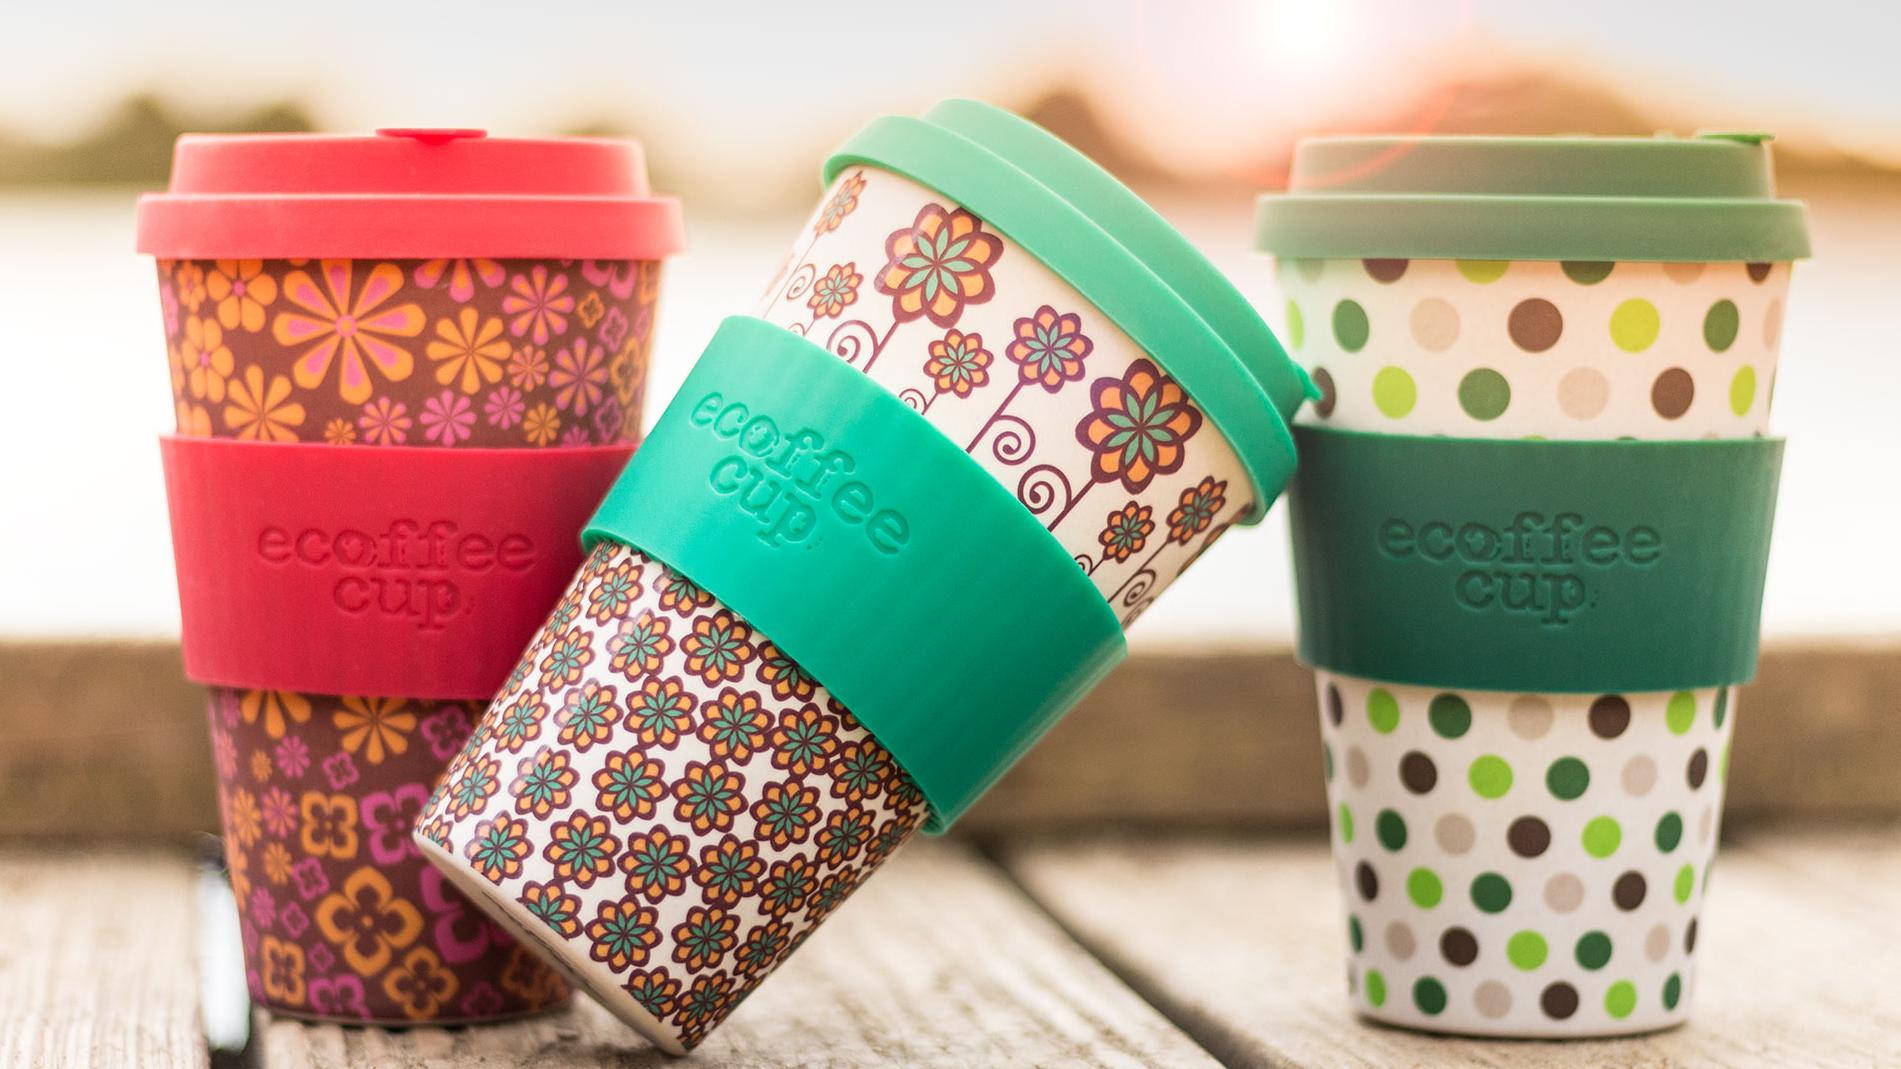 стаканы для кофе Ecoffee cup